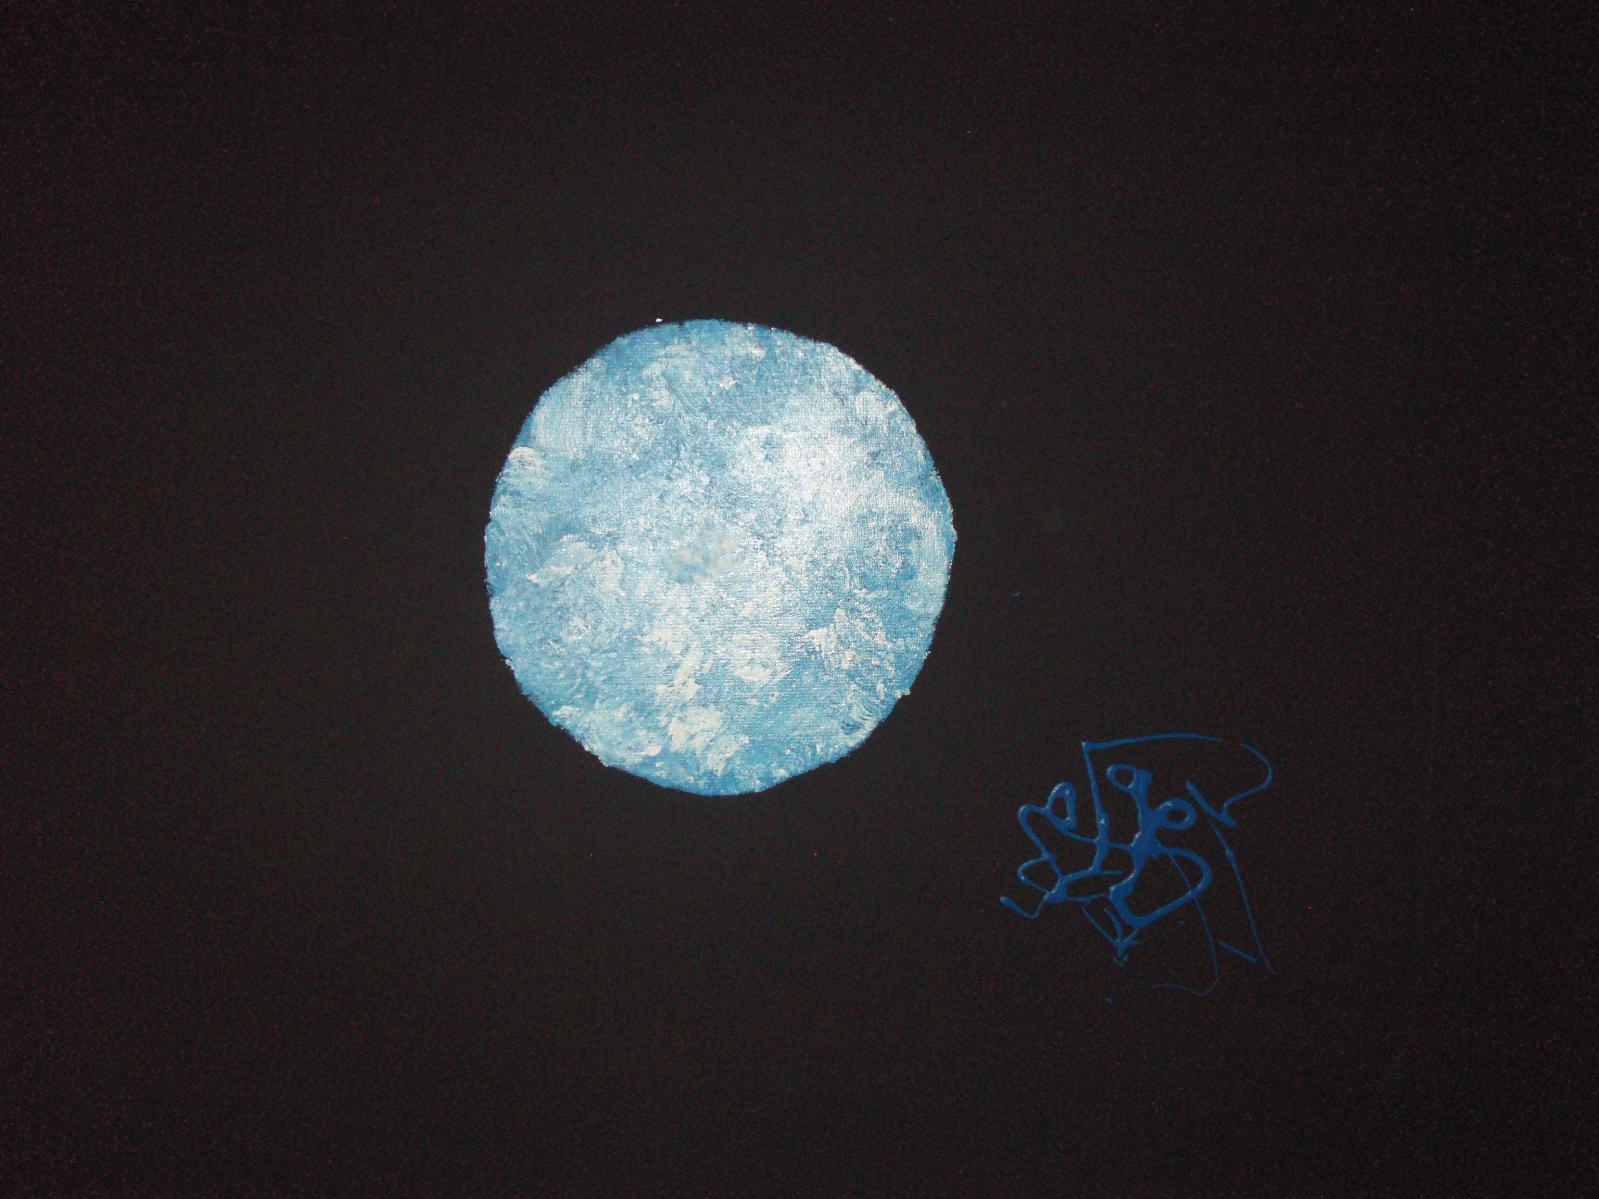 Astre bleu et blanc et Cosmos 651, 2010, acrylique sur toile et dripping (bleu), 92 x 73 cm (détail). DR